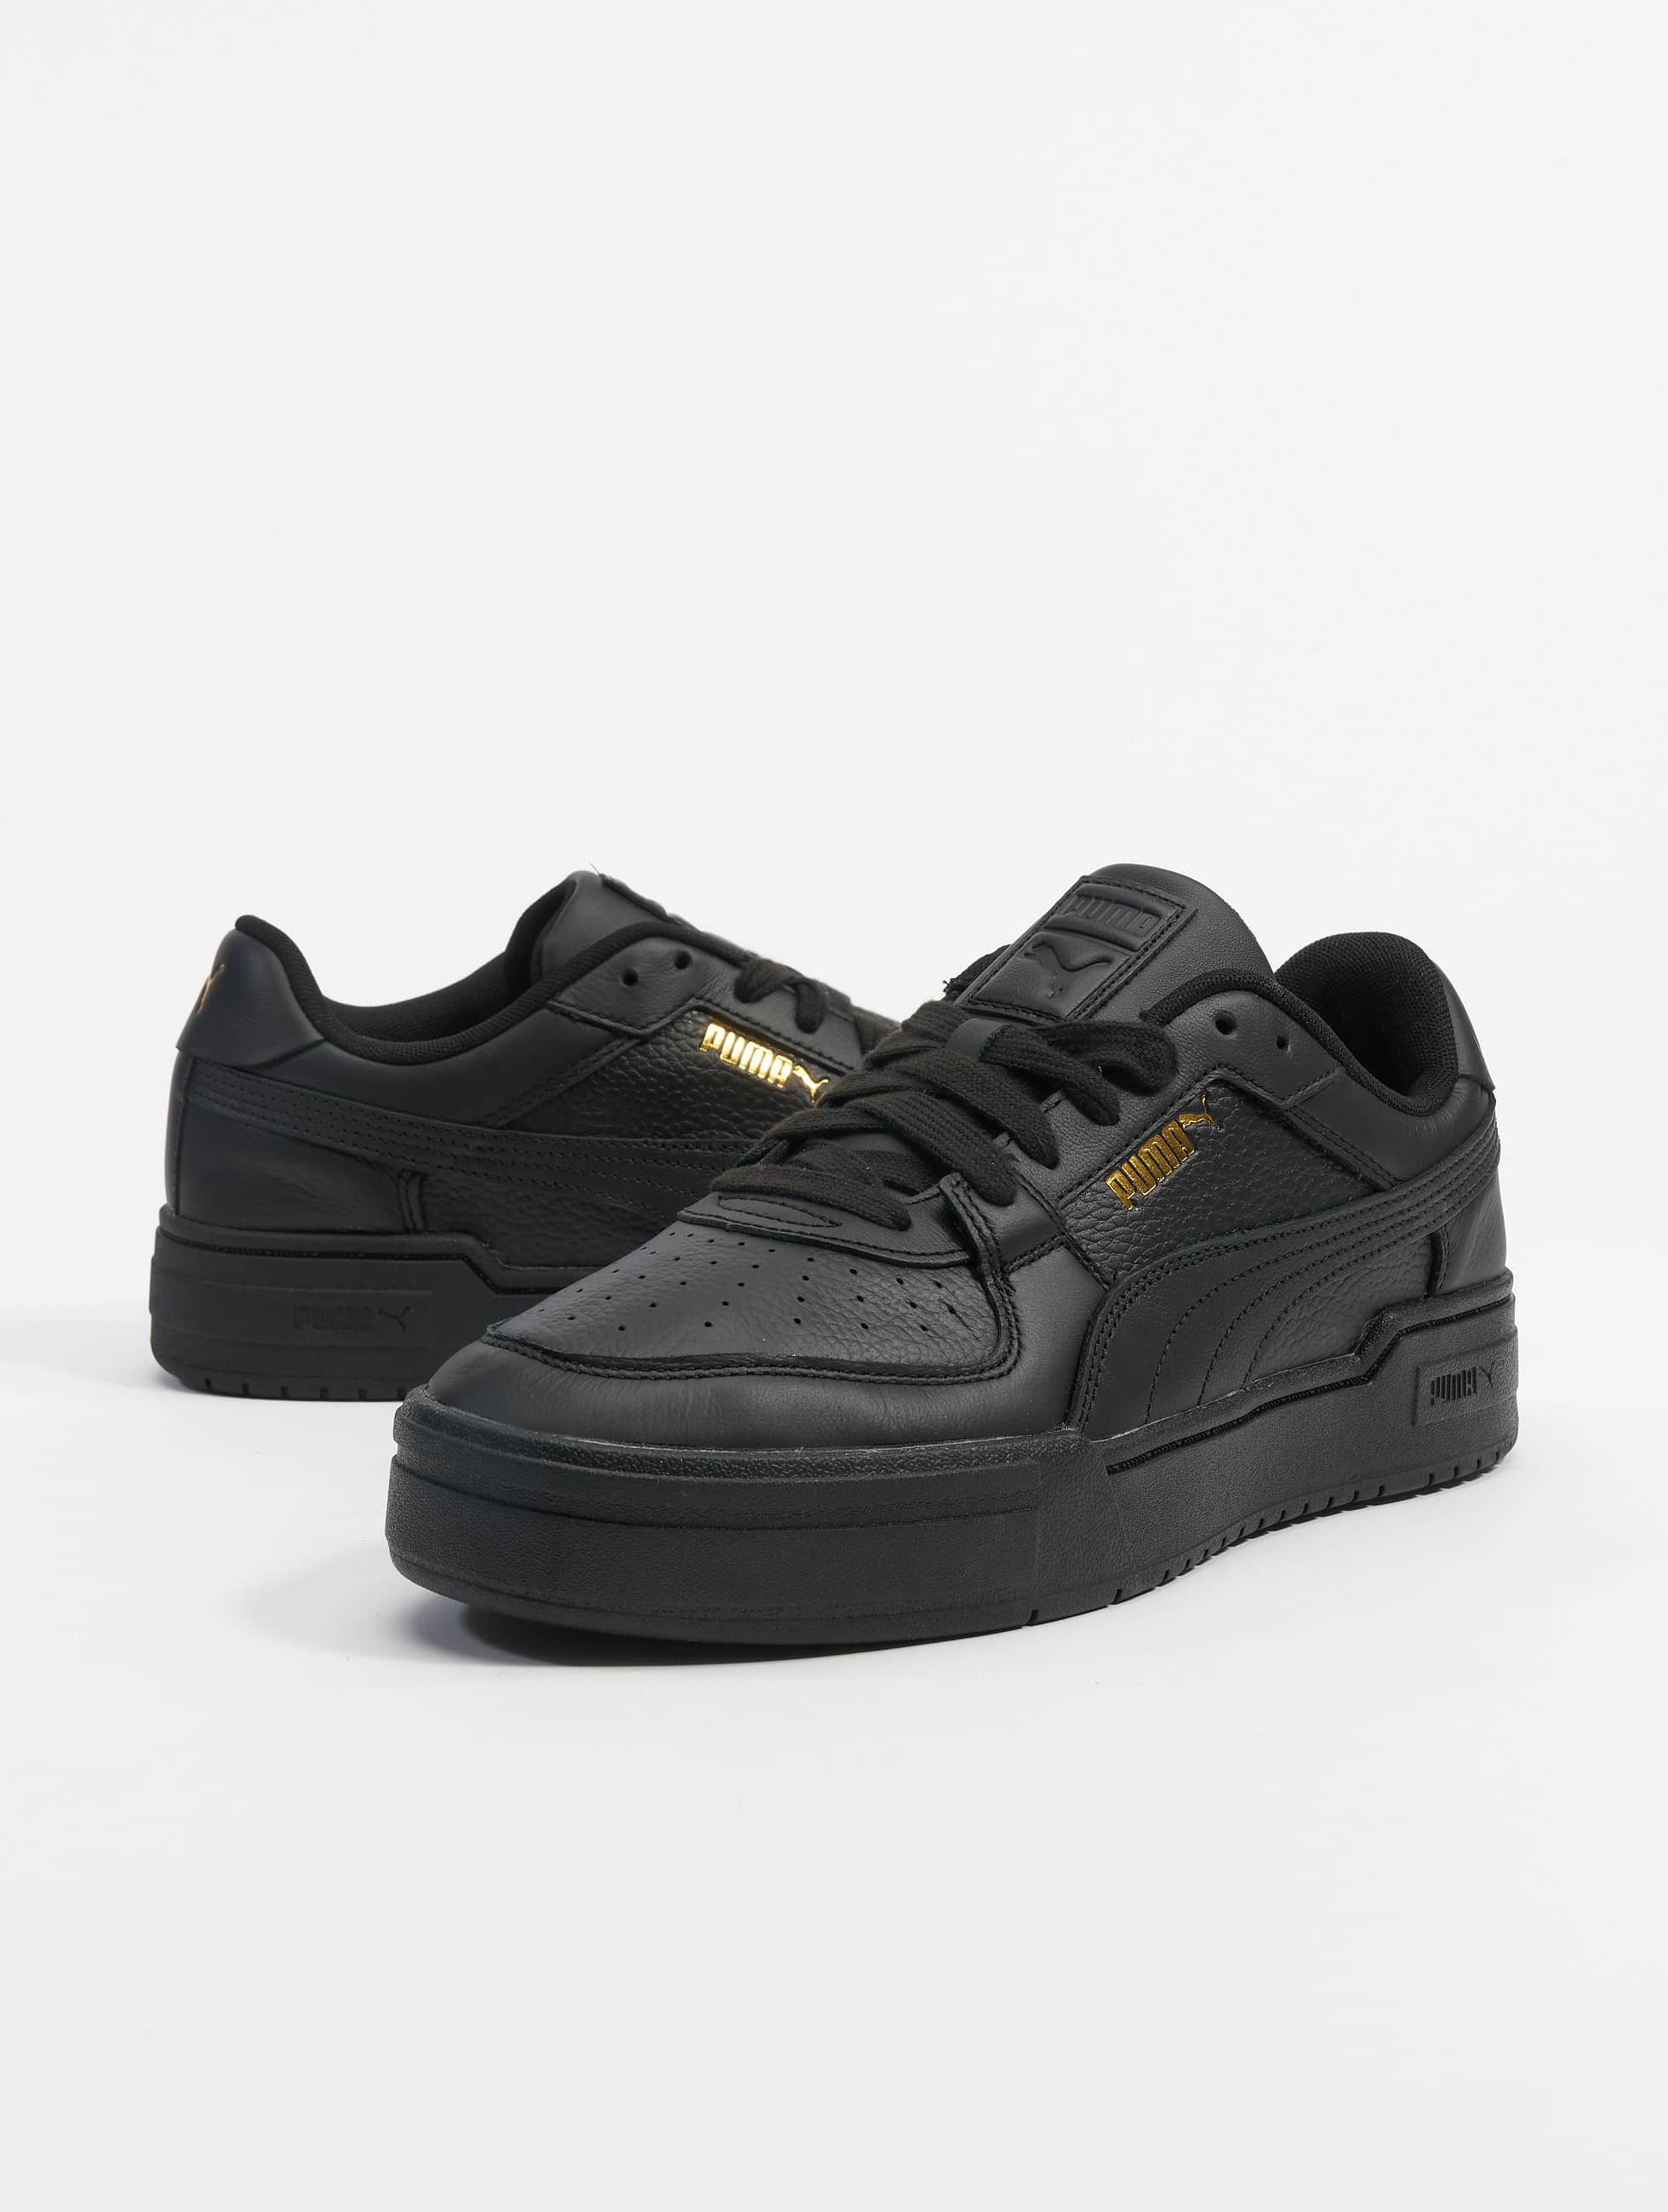 Puma Shoe / Sneakers CA Pro Classic in black 944421